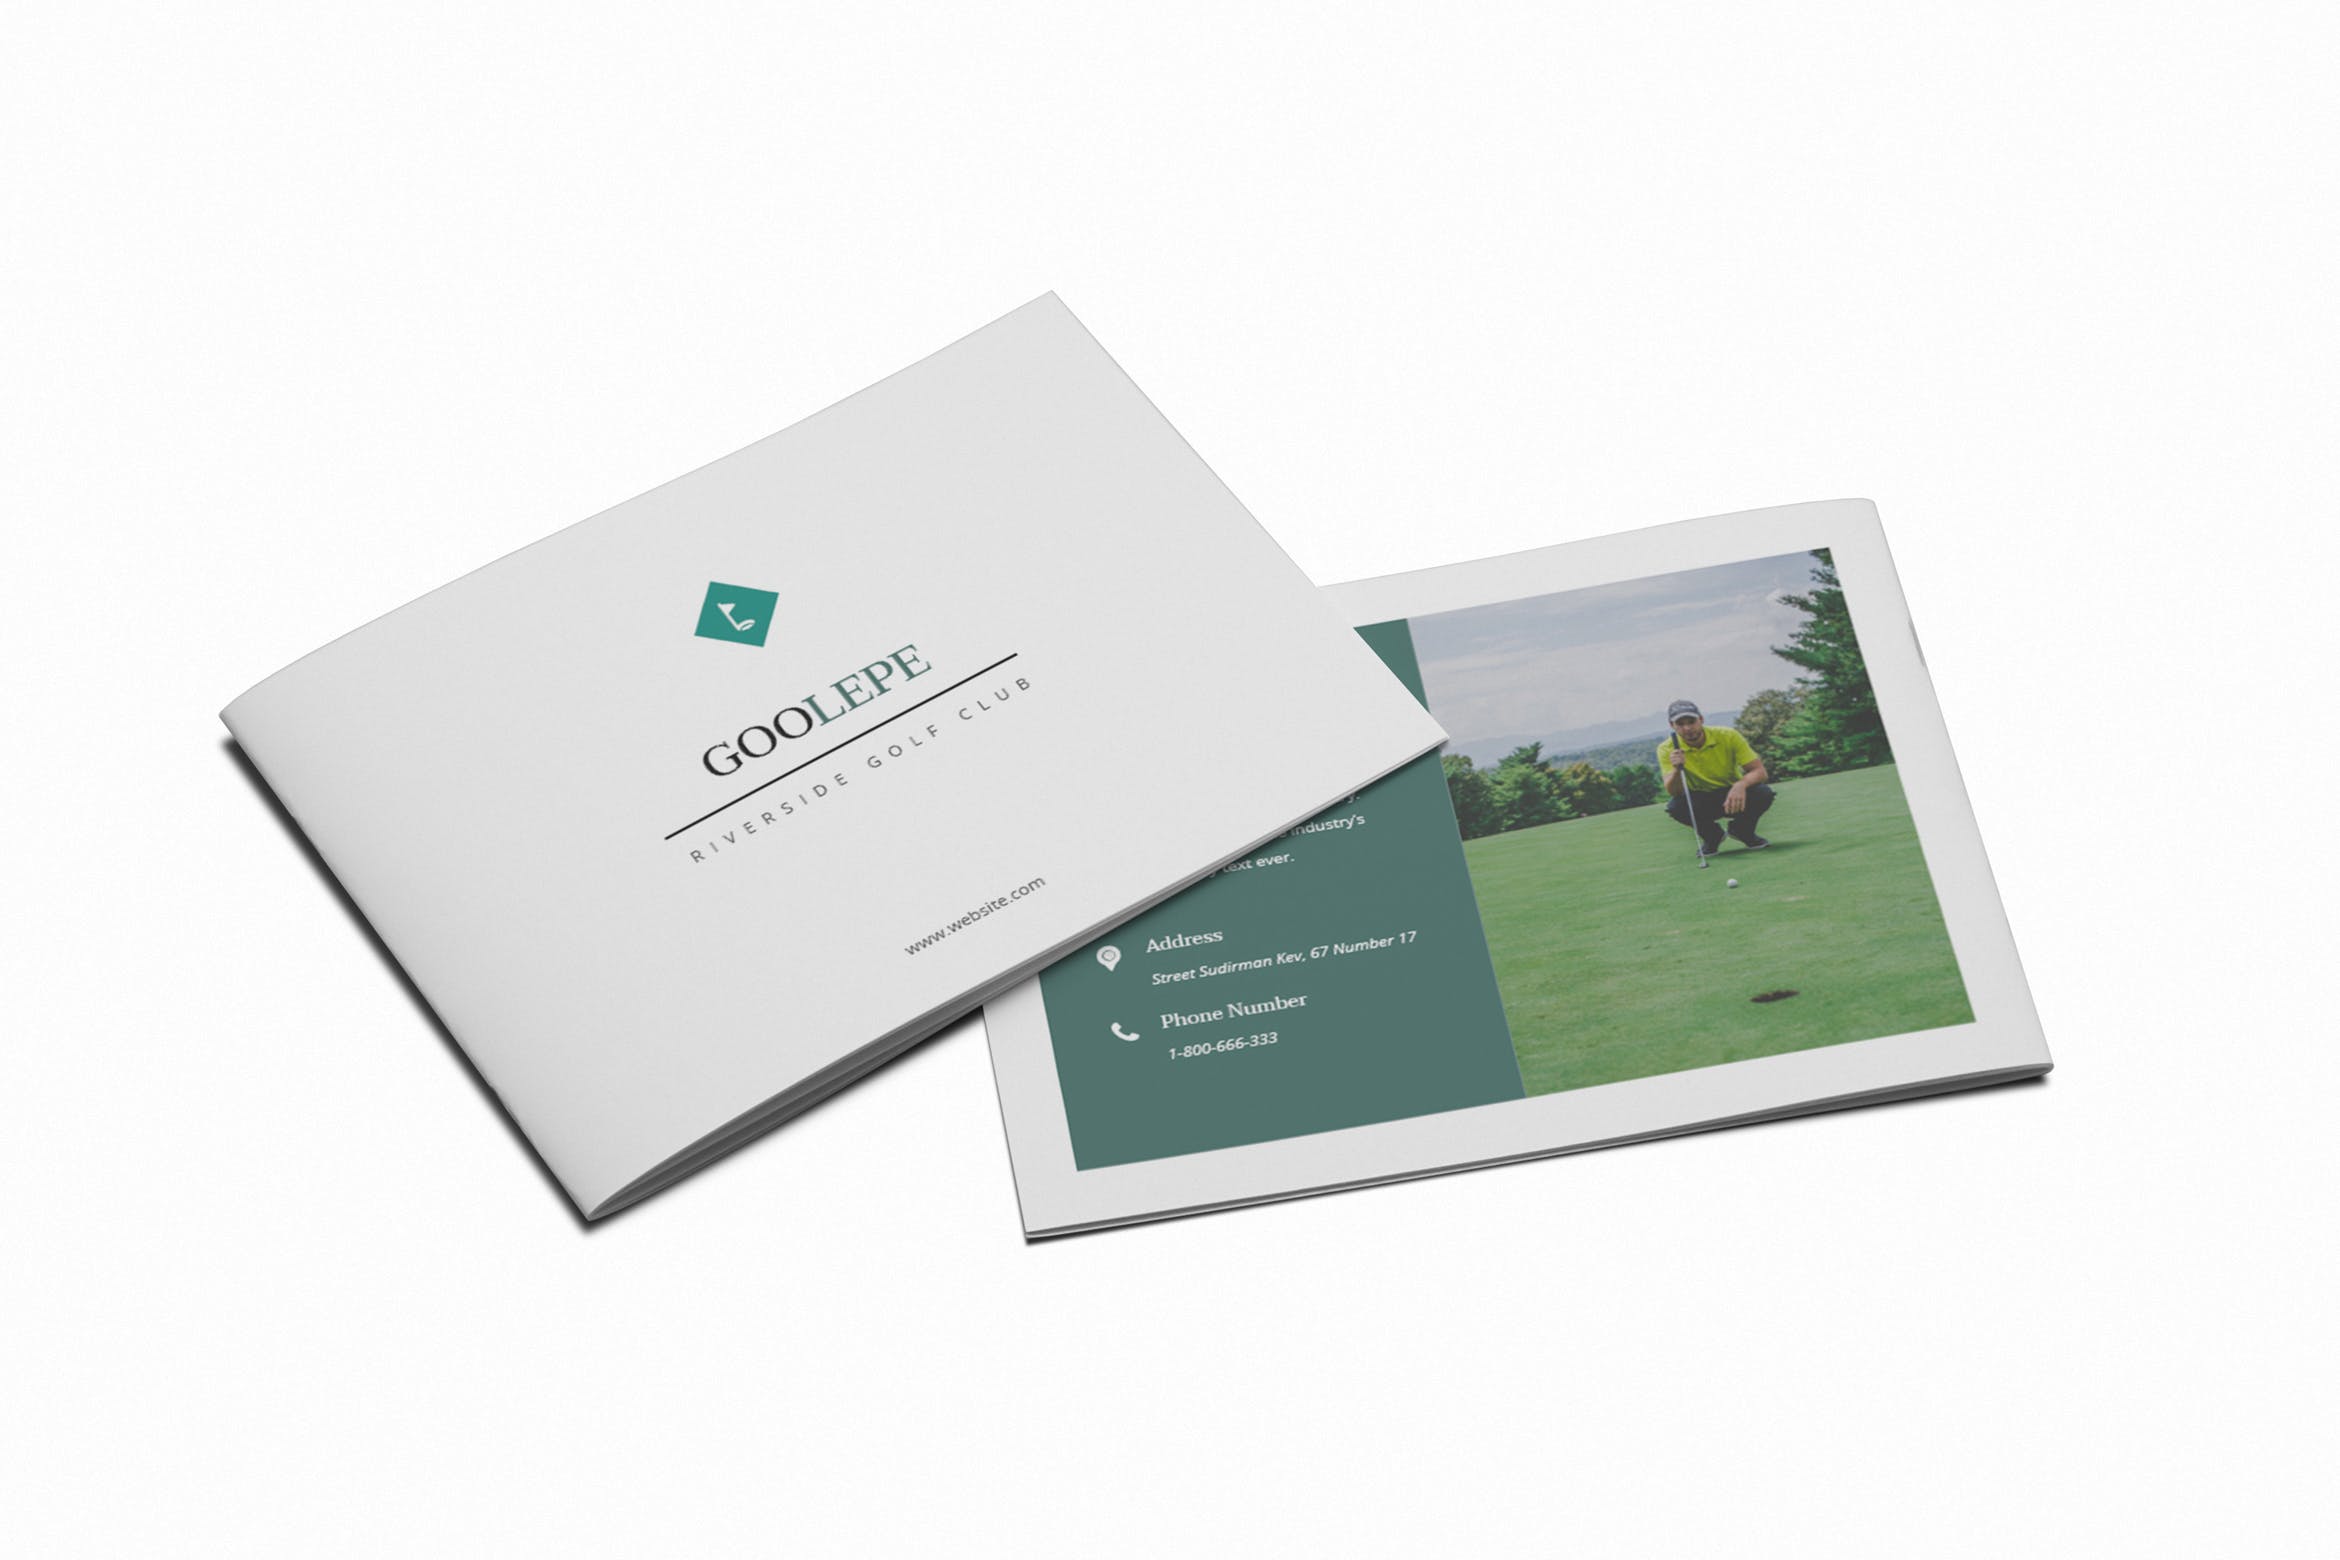 高尔夫场馆/体育场馆横版画册设计版式模板 Golf A5 Brochure Template插图